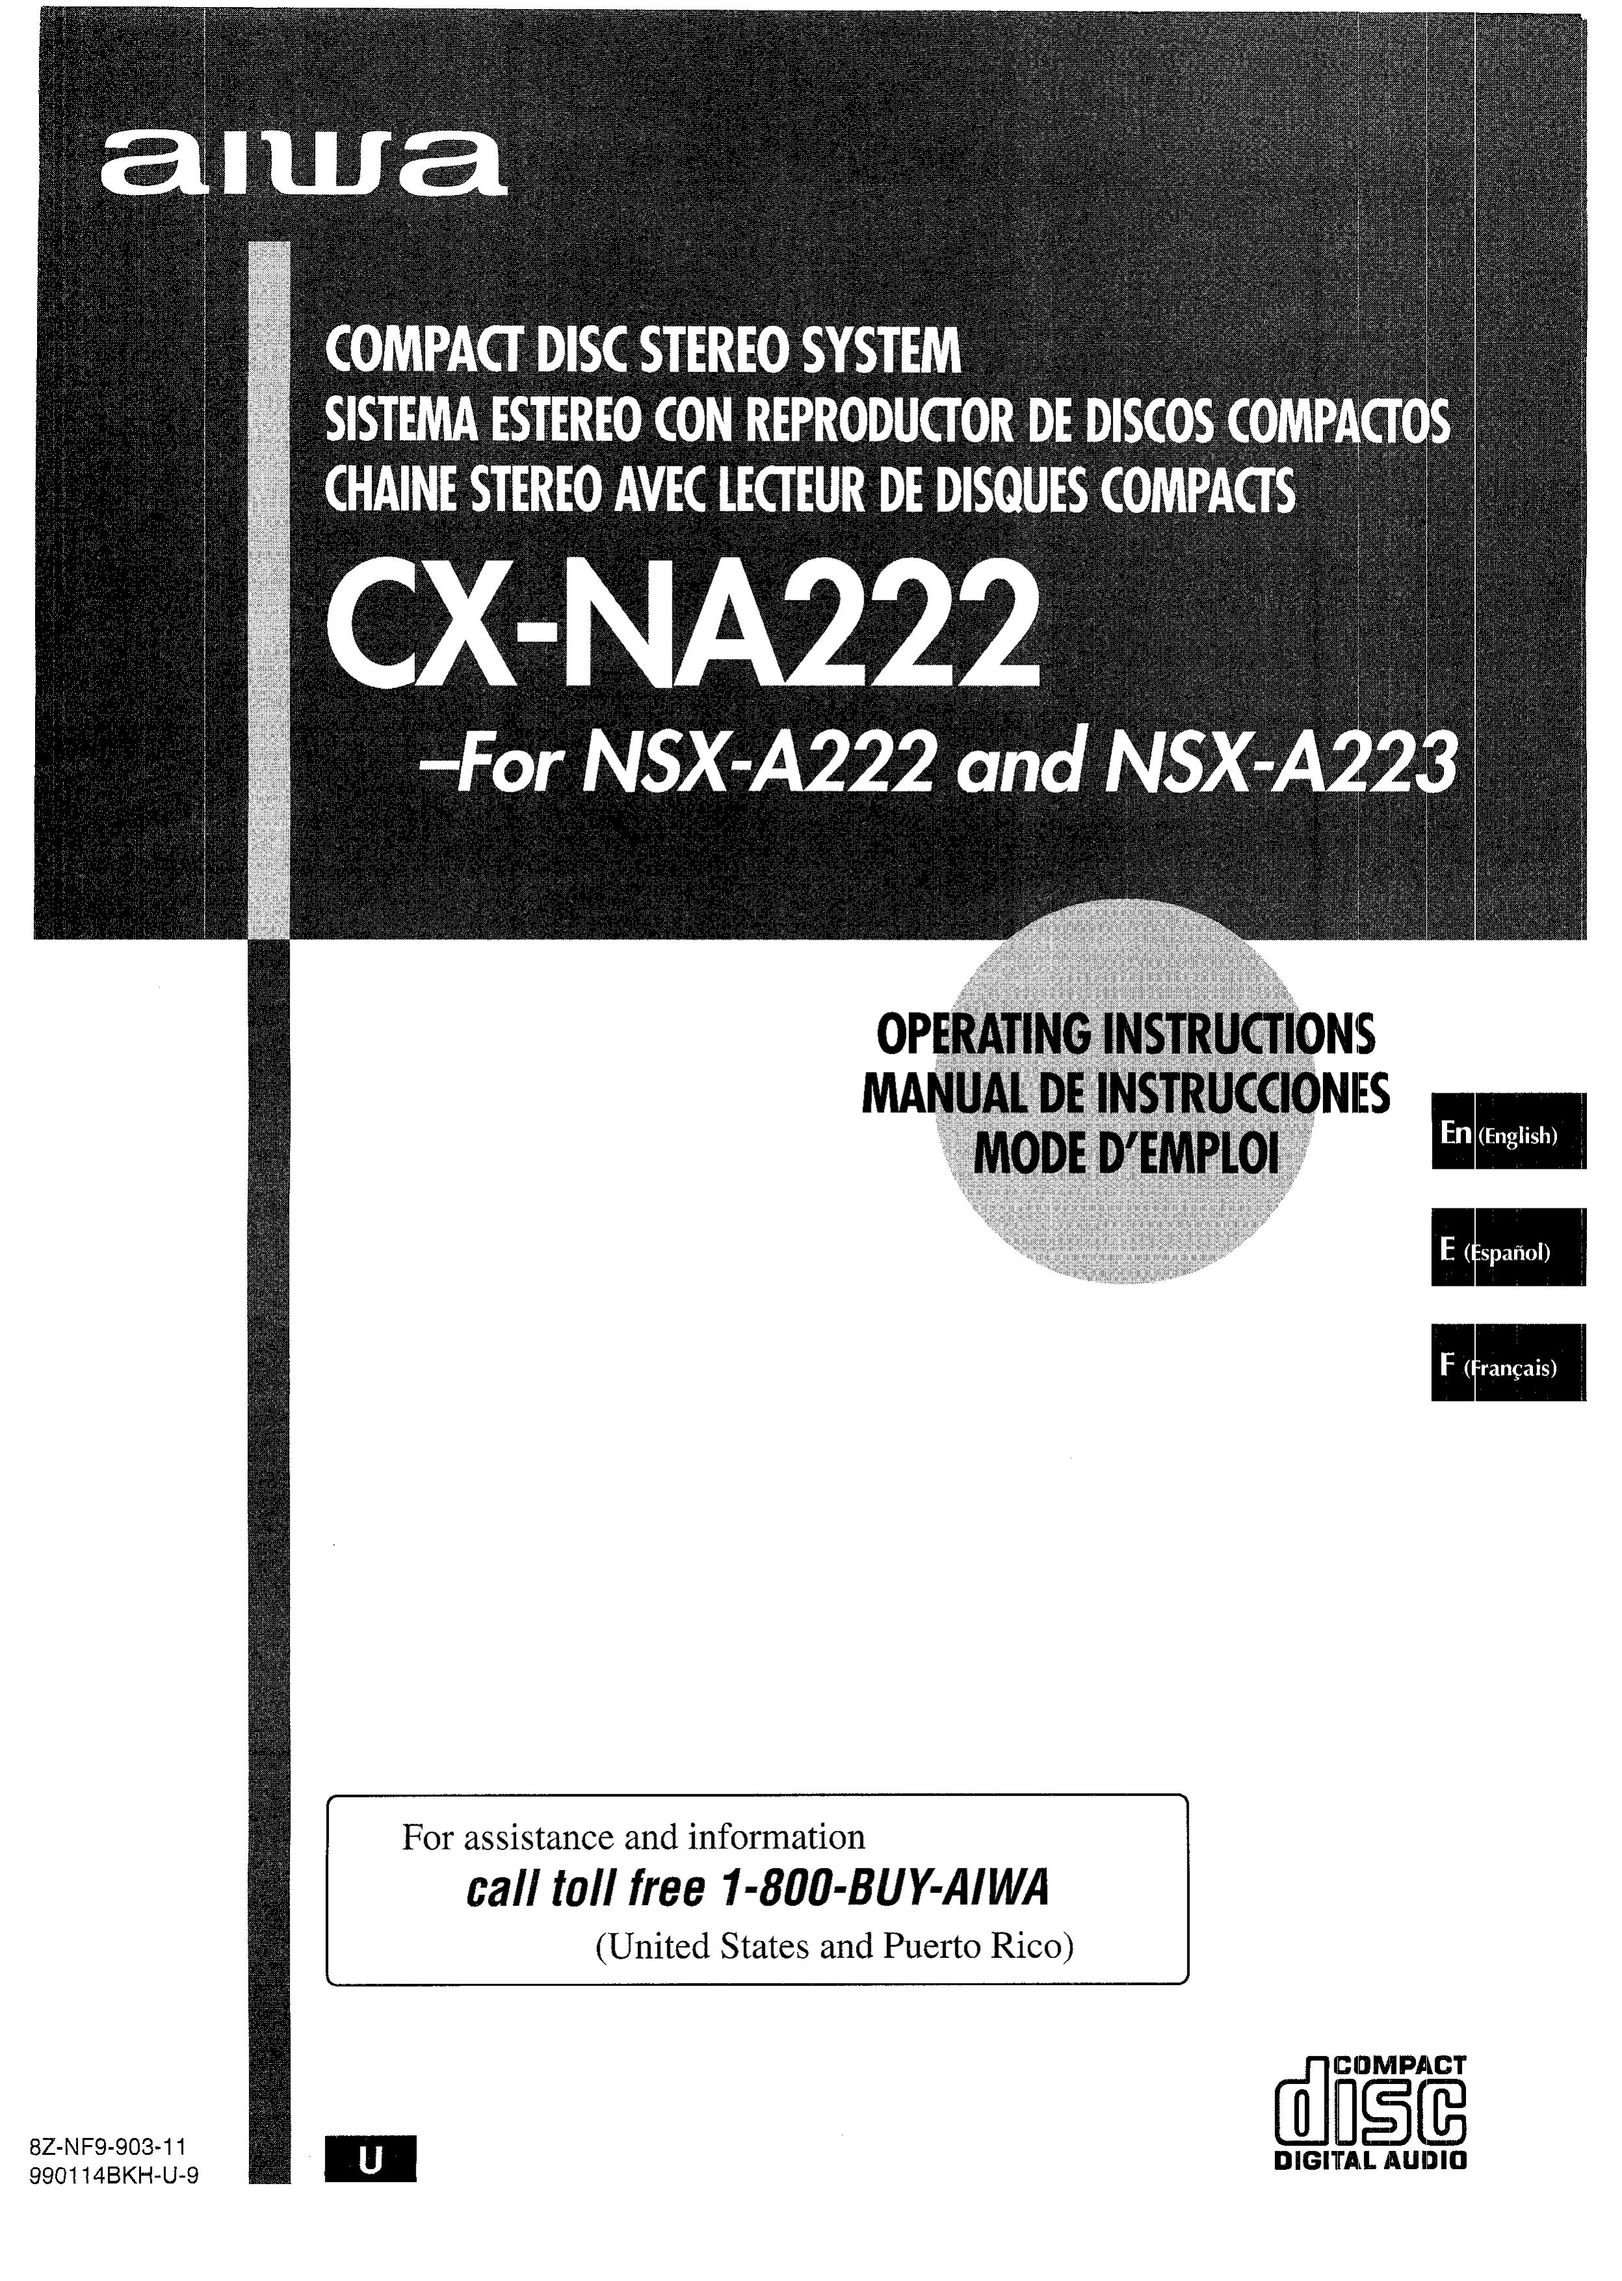 Aiwa CX-NA222 CD Player User Manual